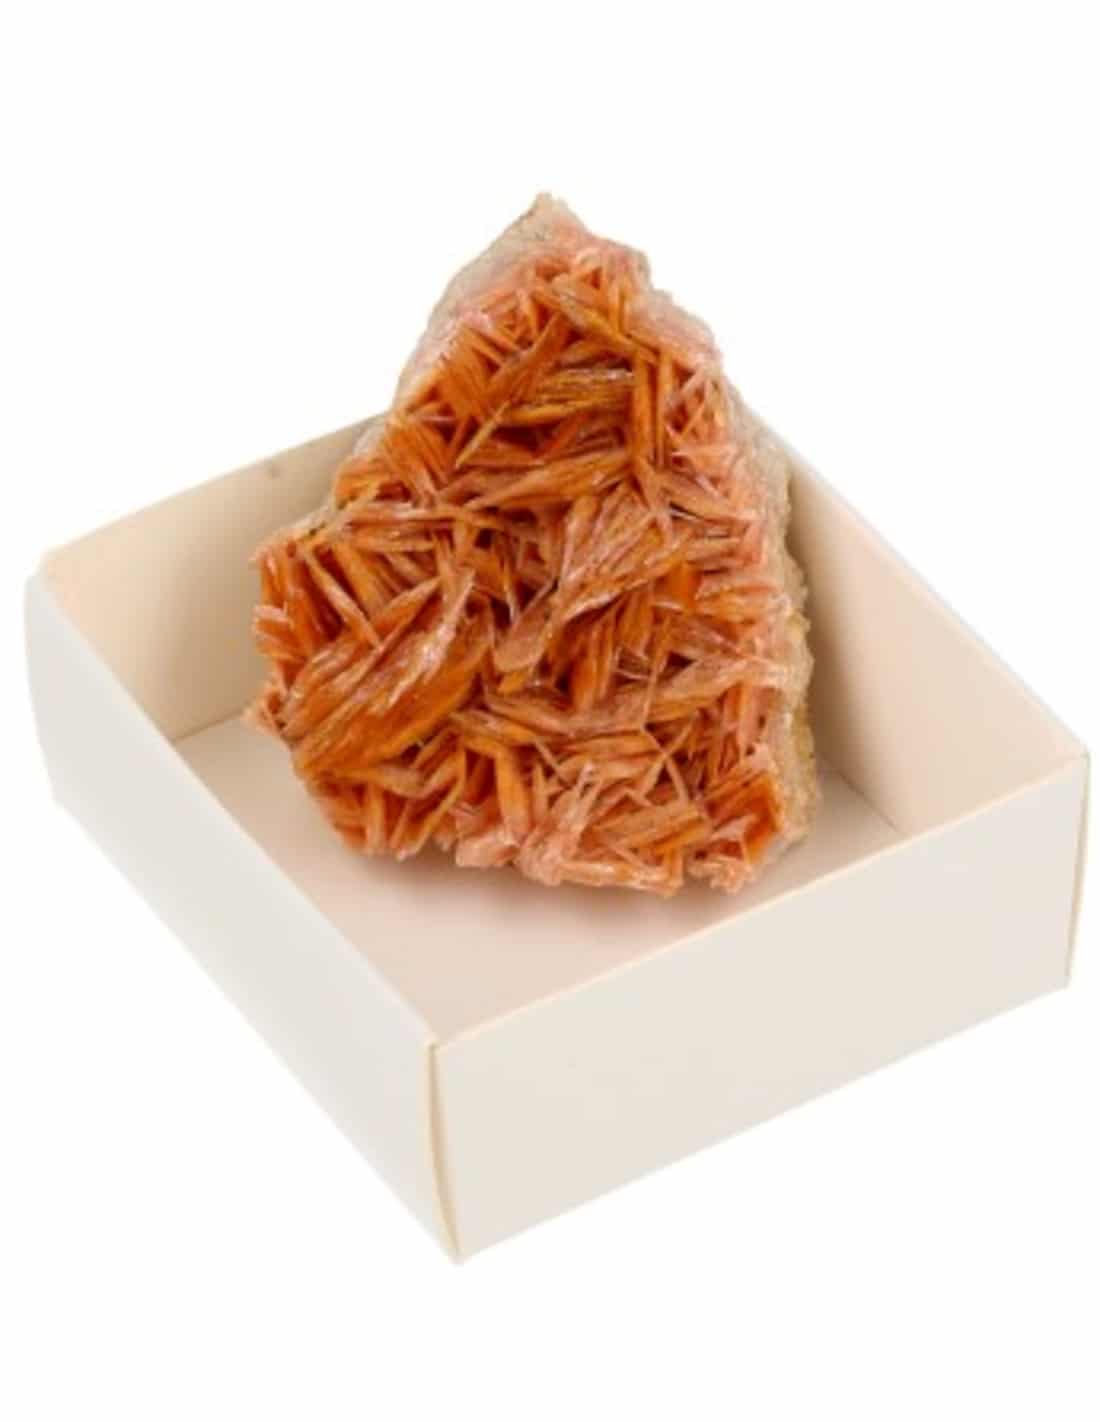 Schachtel Roher Edelstein Baryt Rosa-Orange unter Edelsteine & Mineralien - Edelstein Arten - Rohe Edelsteine